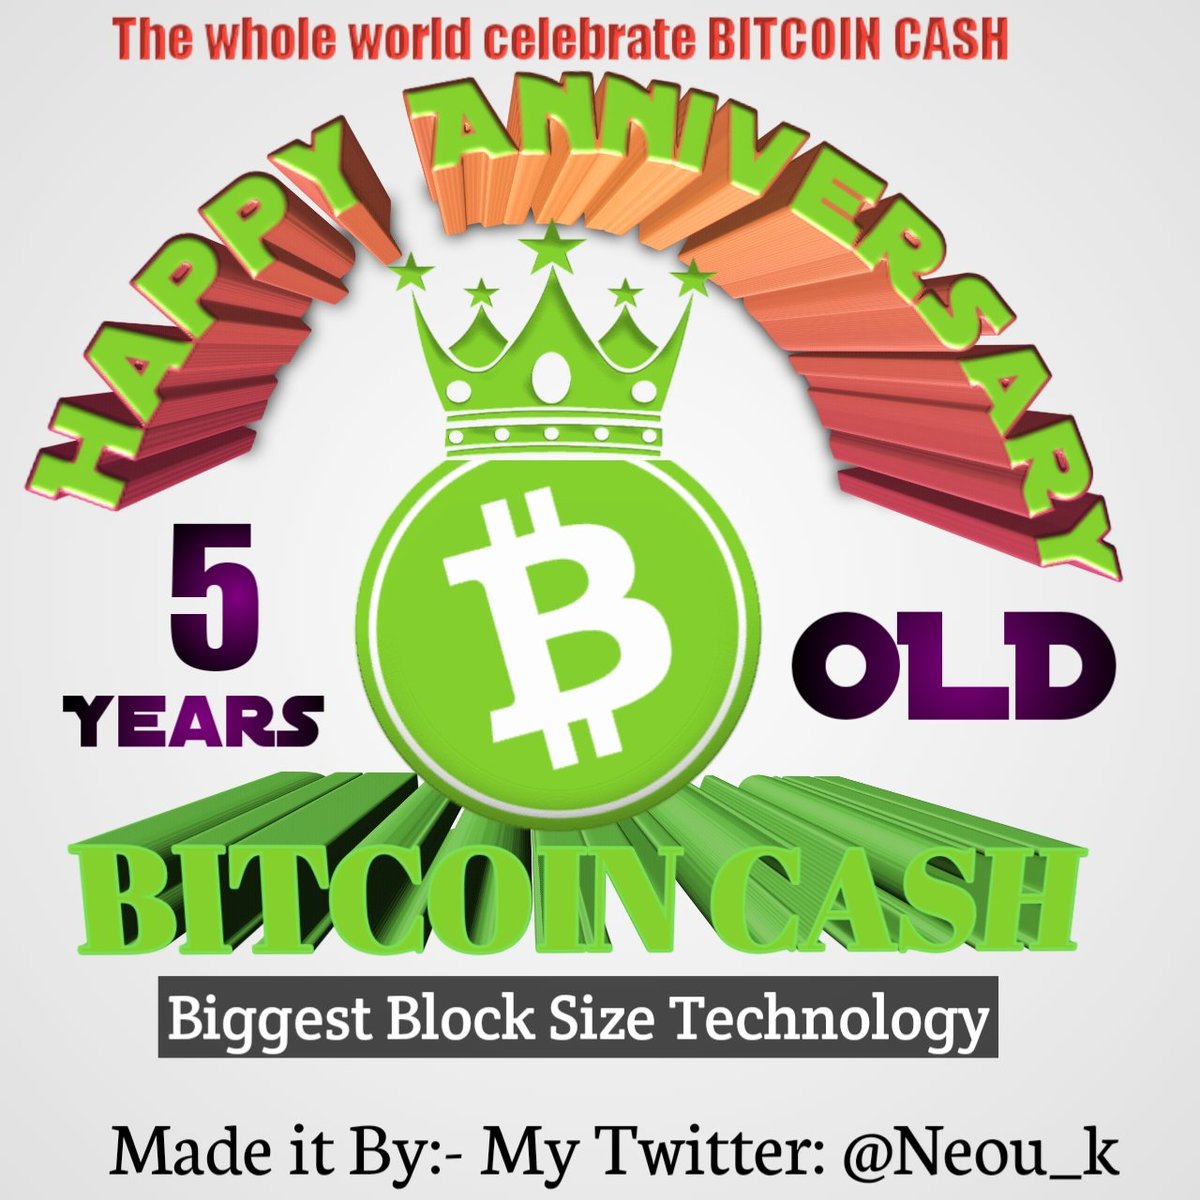 @bch_sun It's my 2nd entry
#memecoin #dao #SmartBCH 
#BitcoinCash